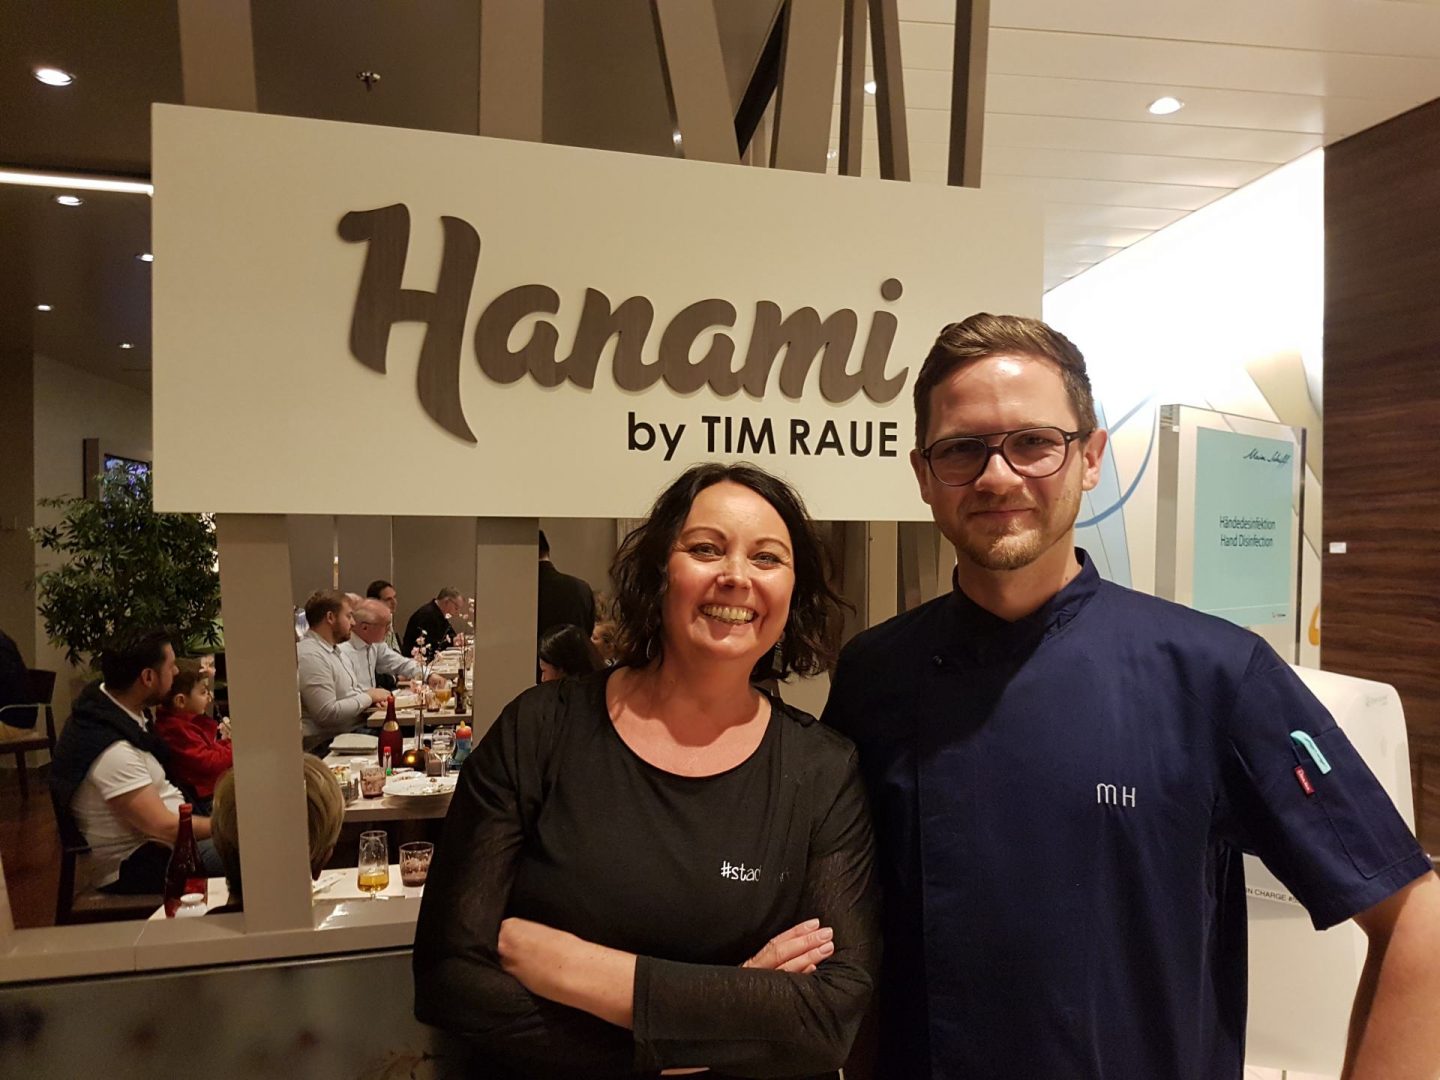 Erfahrung Bewertung Kritik Gourmetpaket Mein Schiff Hanami by Tim Raue Foodblog Sternestulle trifft Marcel Hertrampf